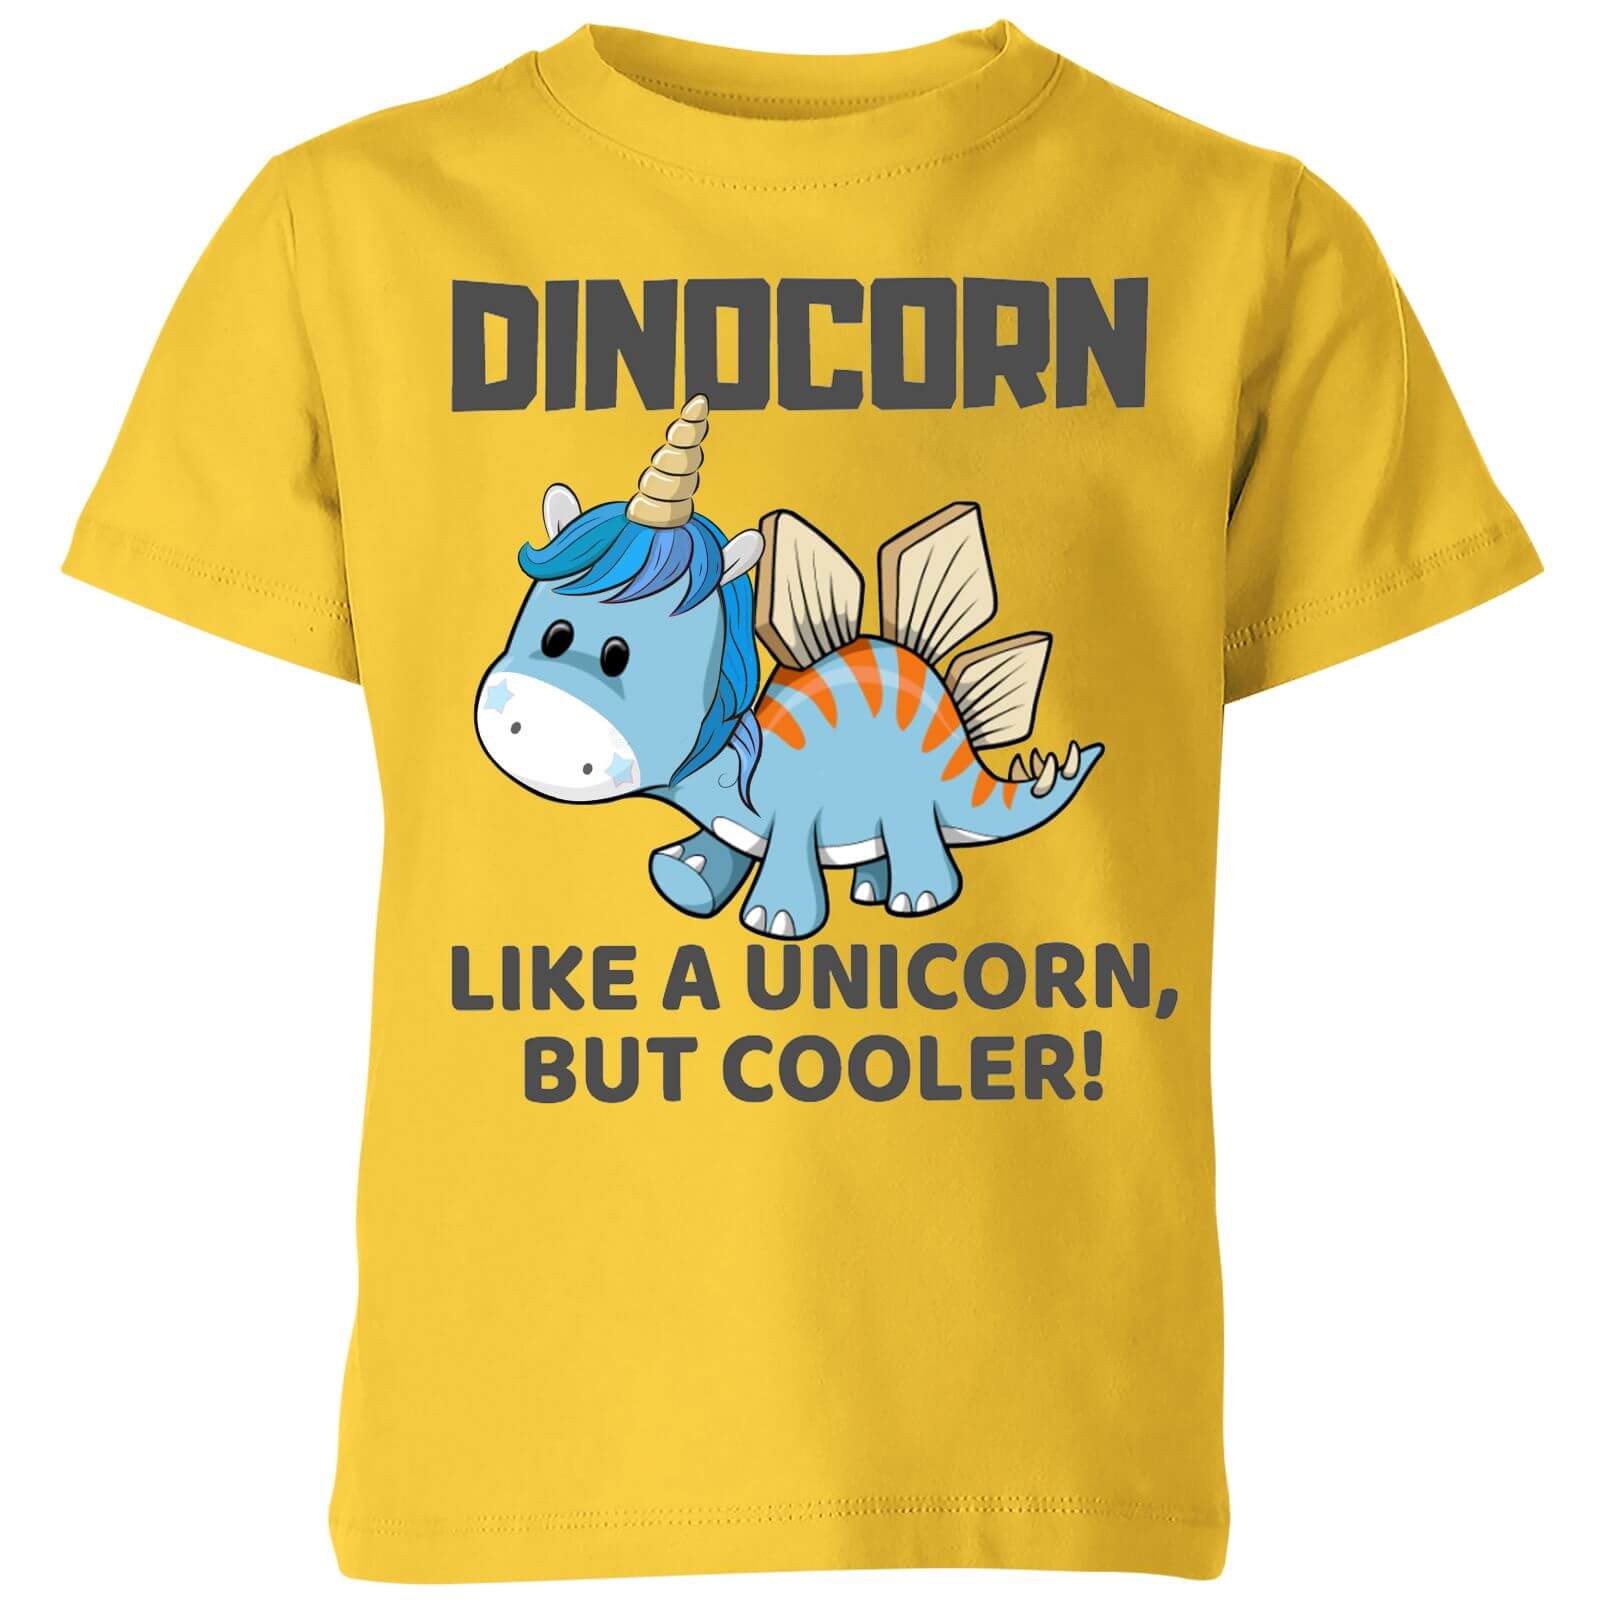 Big and Beautiful Dinocorn Kids' T-Shirt - Yellow - 3-4 Years - Yellow